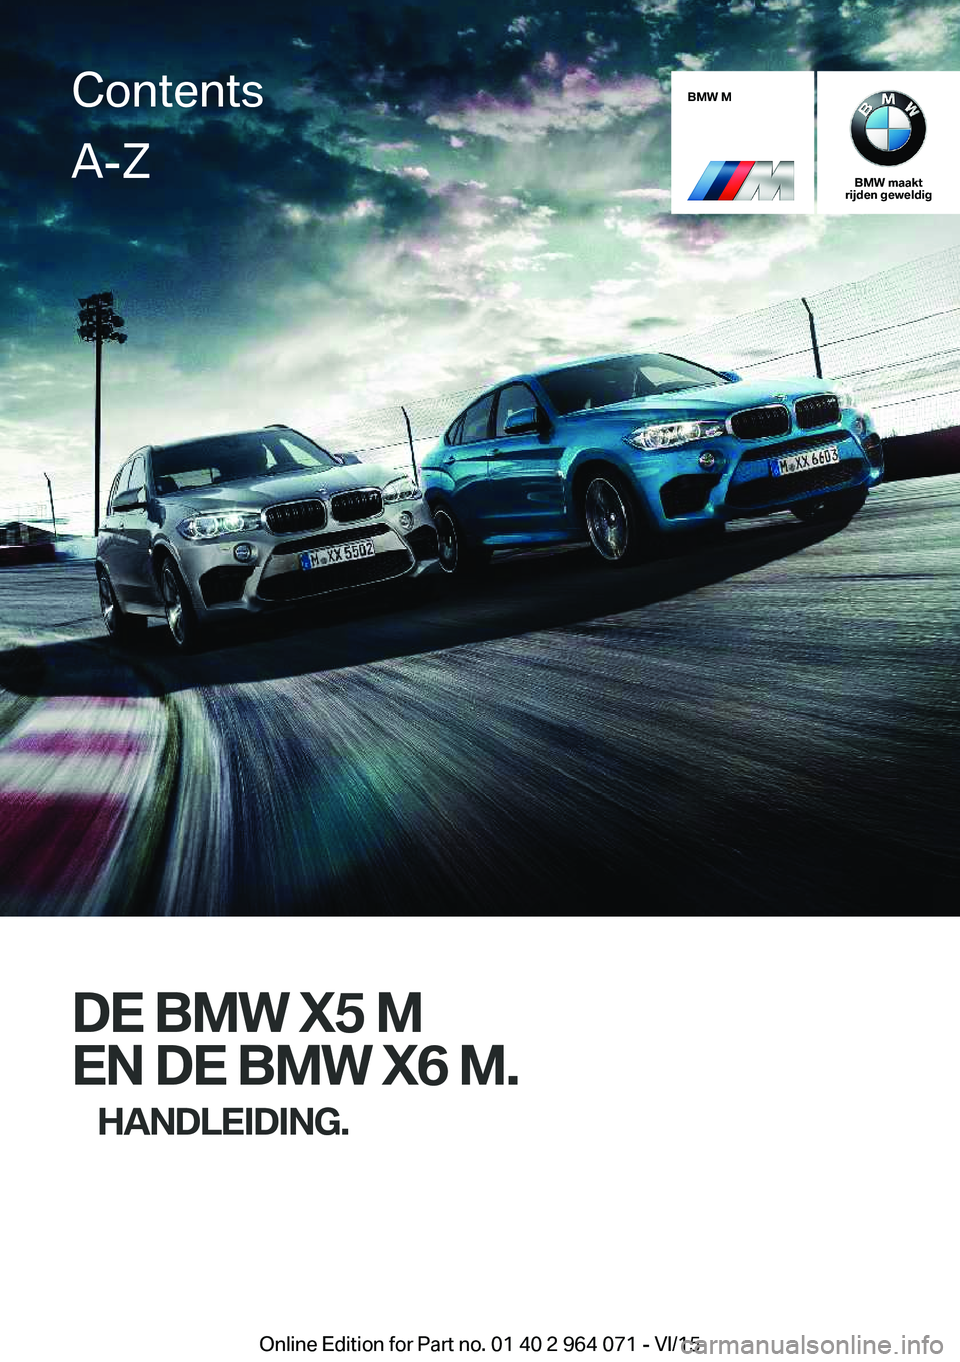 BMW X5 M 2016  Instructieboekjes (in Dutch) BMW M
BMW maakt
rijden geweldig
DE BMW X5 M
EN DE BMW X6 M. HANDLEIDING.
ContentsA-Z
Online Edition for Part no. 01 40 2 964 071 - VI/15   